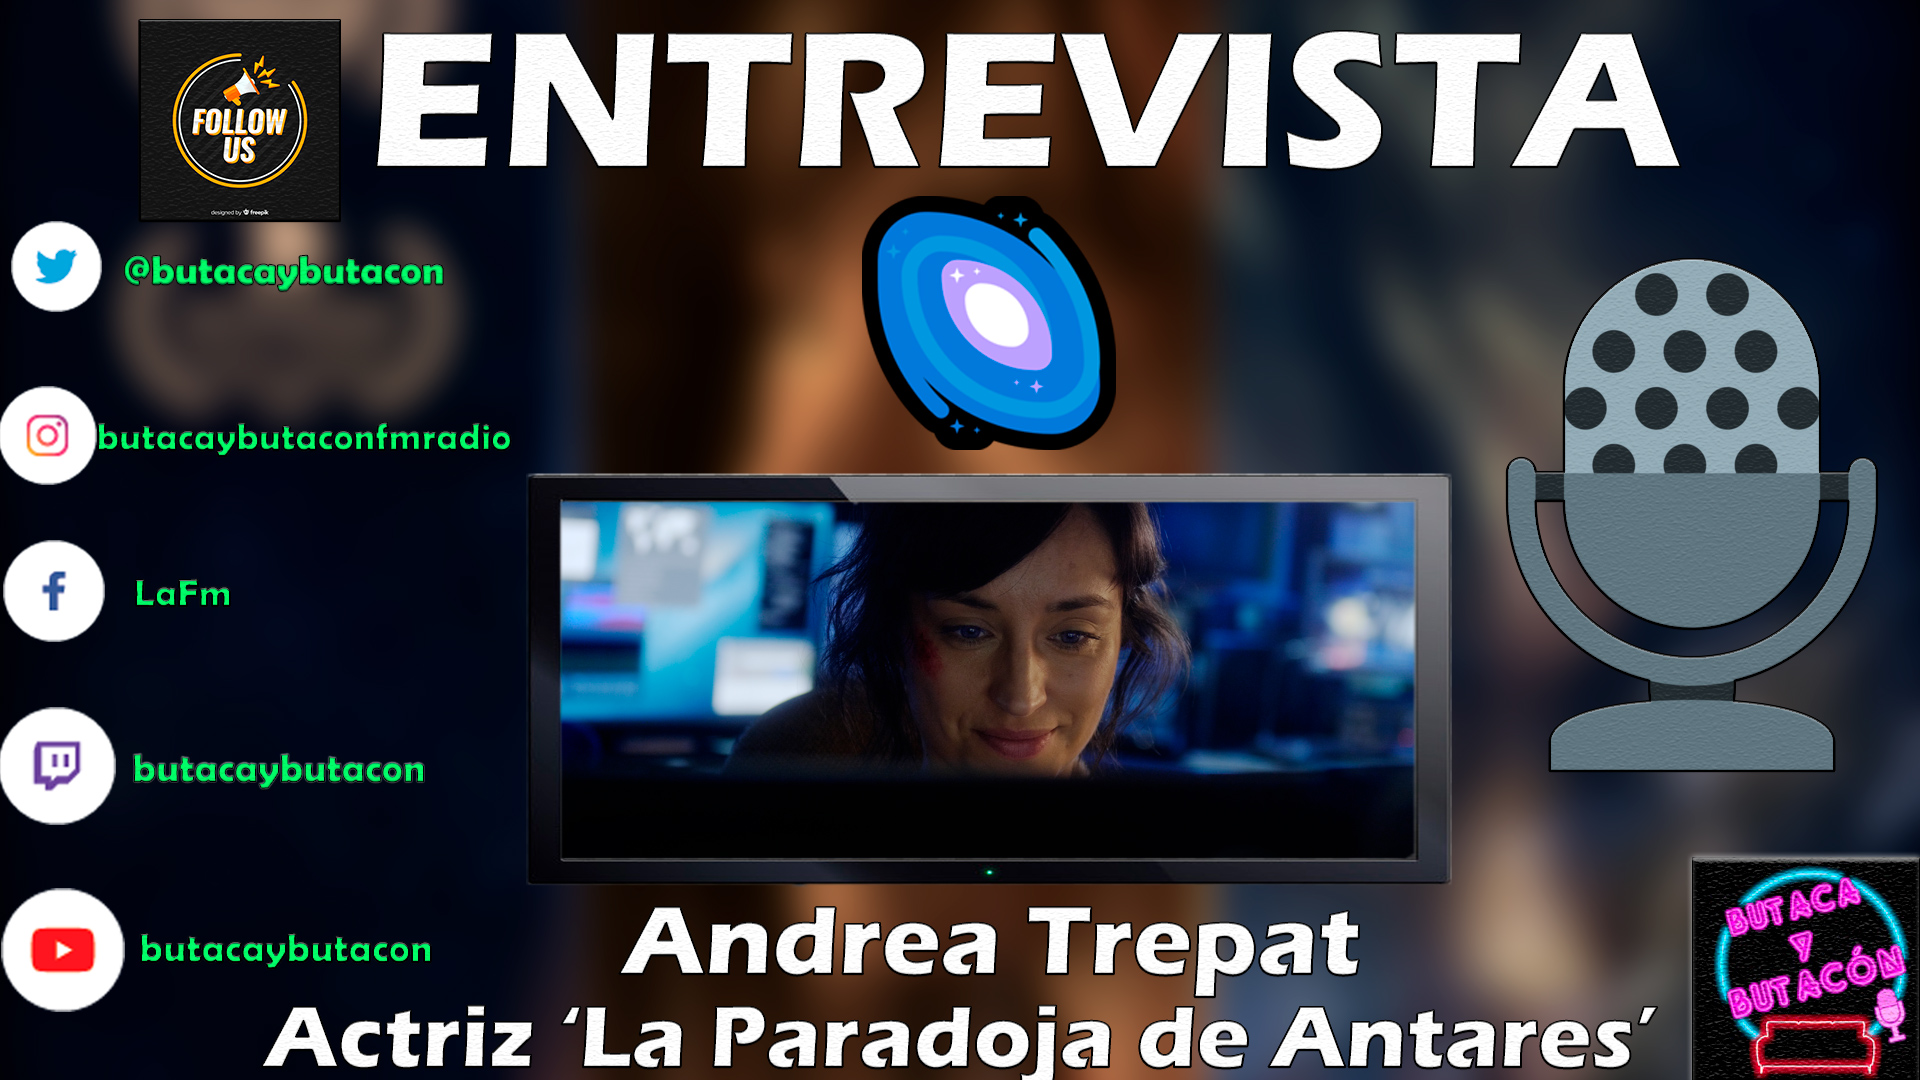 Andrea Trepat descifra 'La Paradoja de Antares' a través de la sensibilidad, humildad y magia de la interpretación